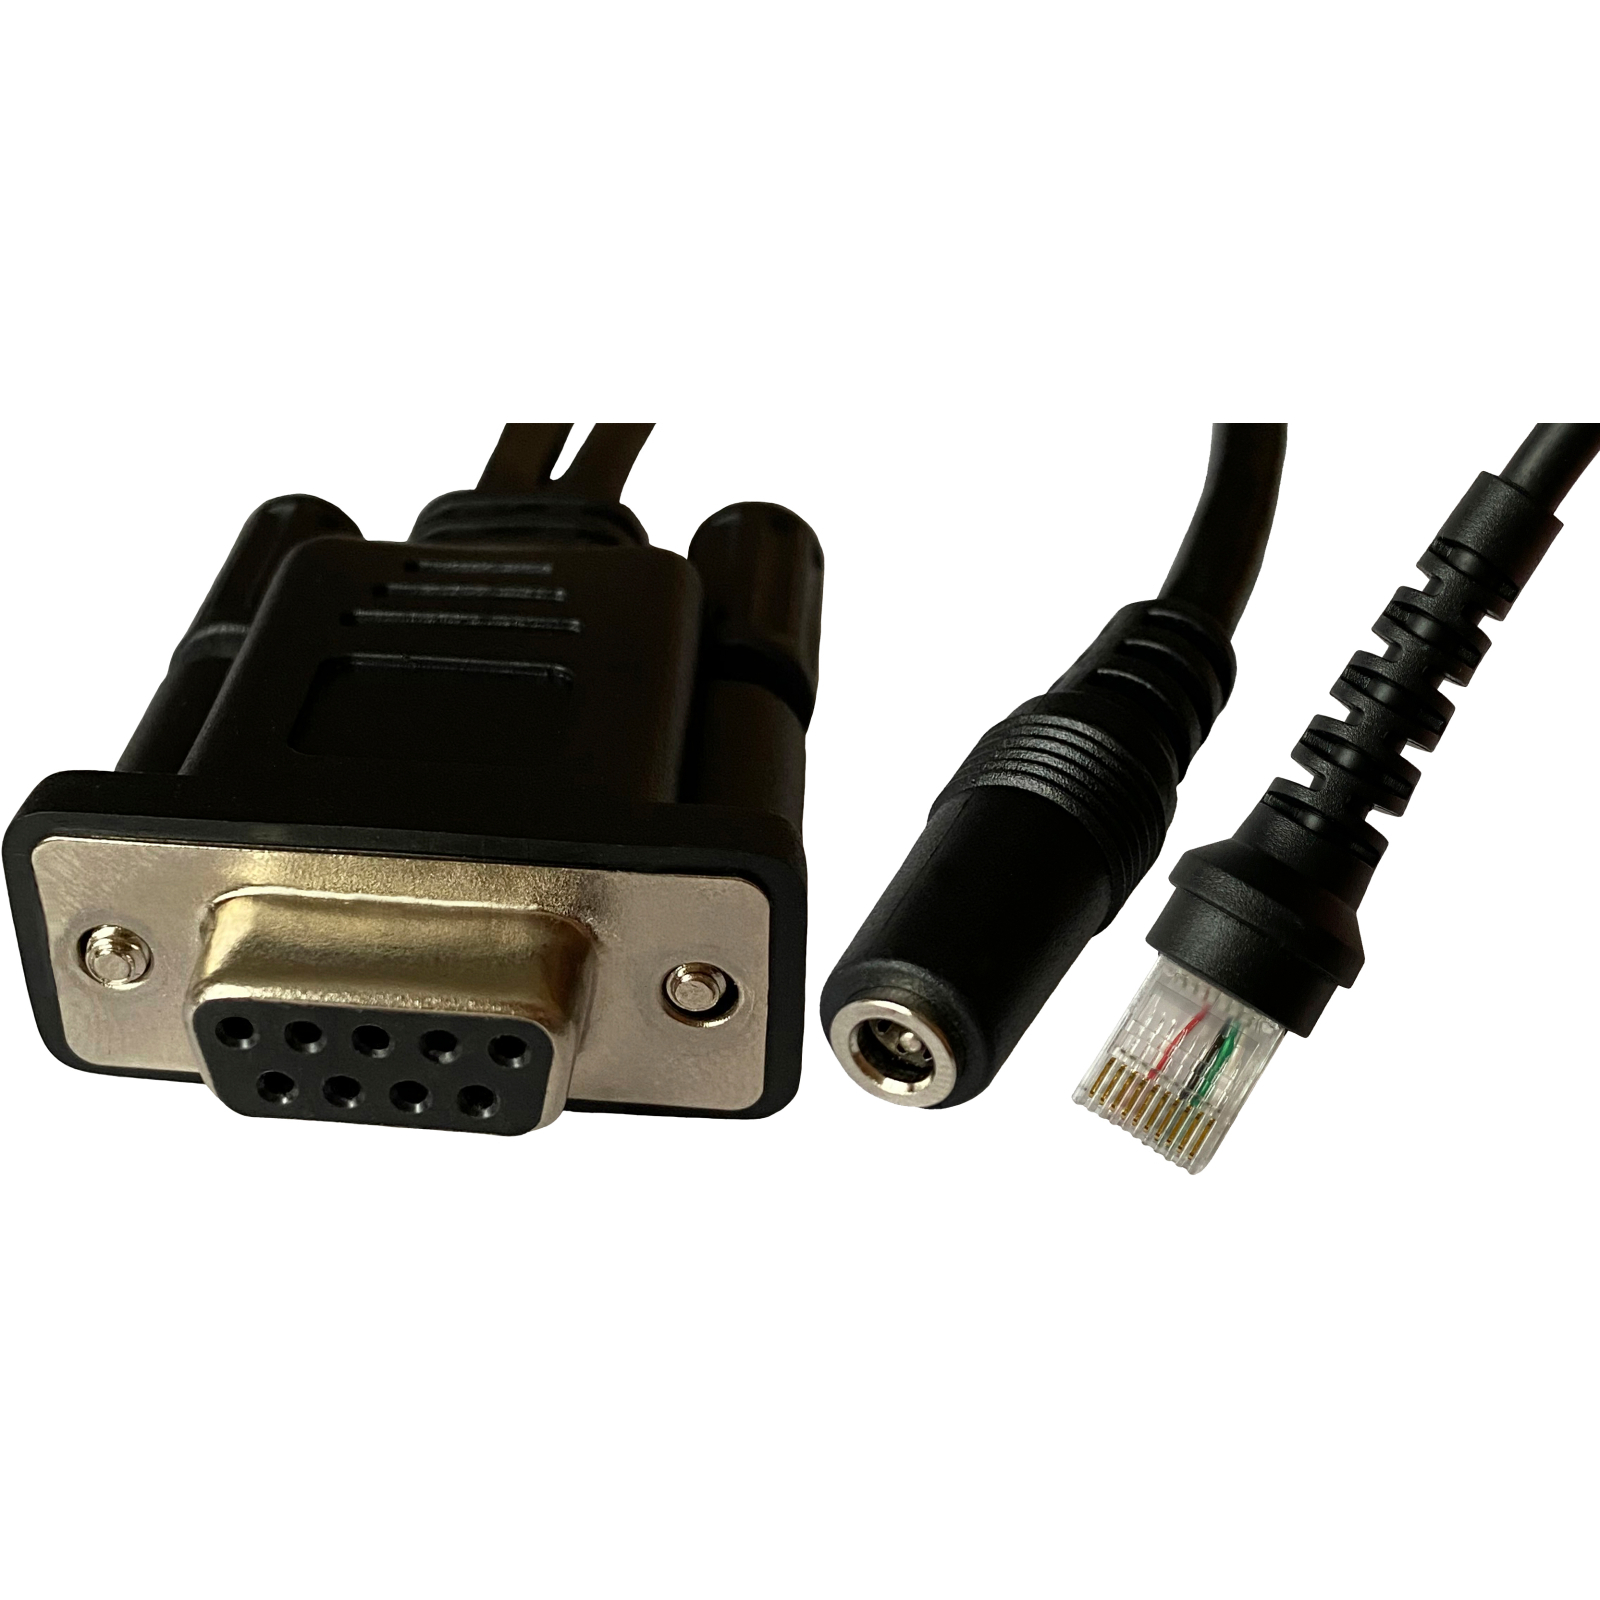 Интерфейсный кабель ІКС RS232 для сканера ІКС-3209, black, external power (RS232 cable-ІКС-3209) изображение 3